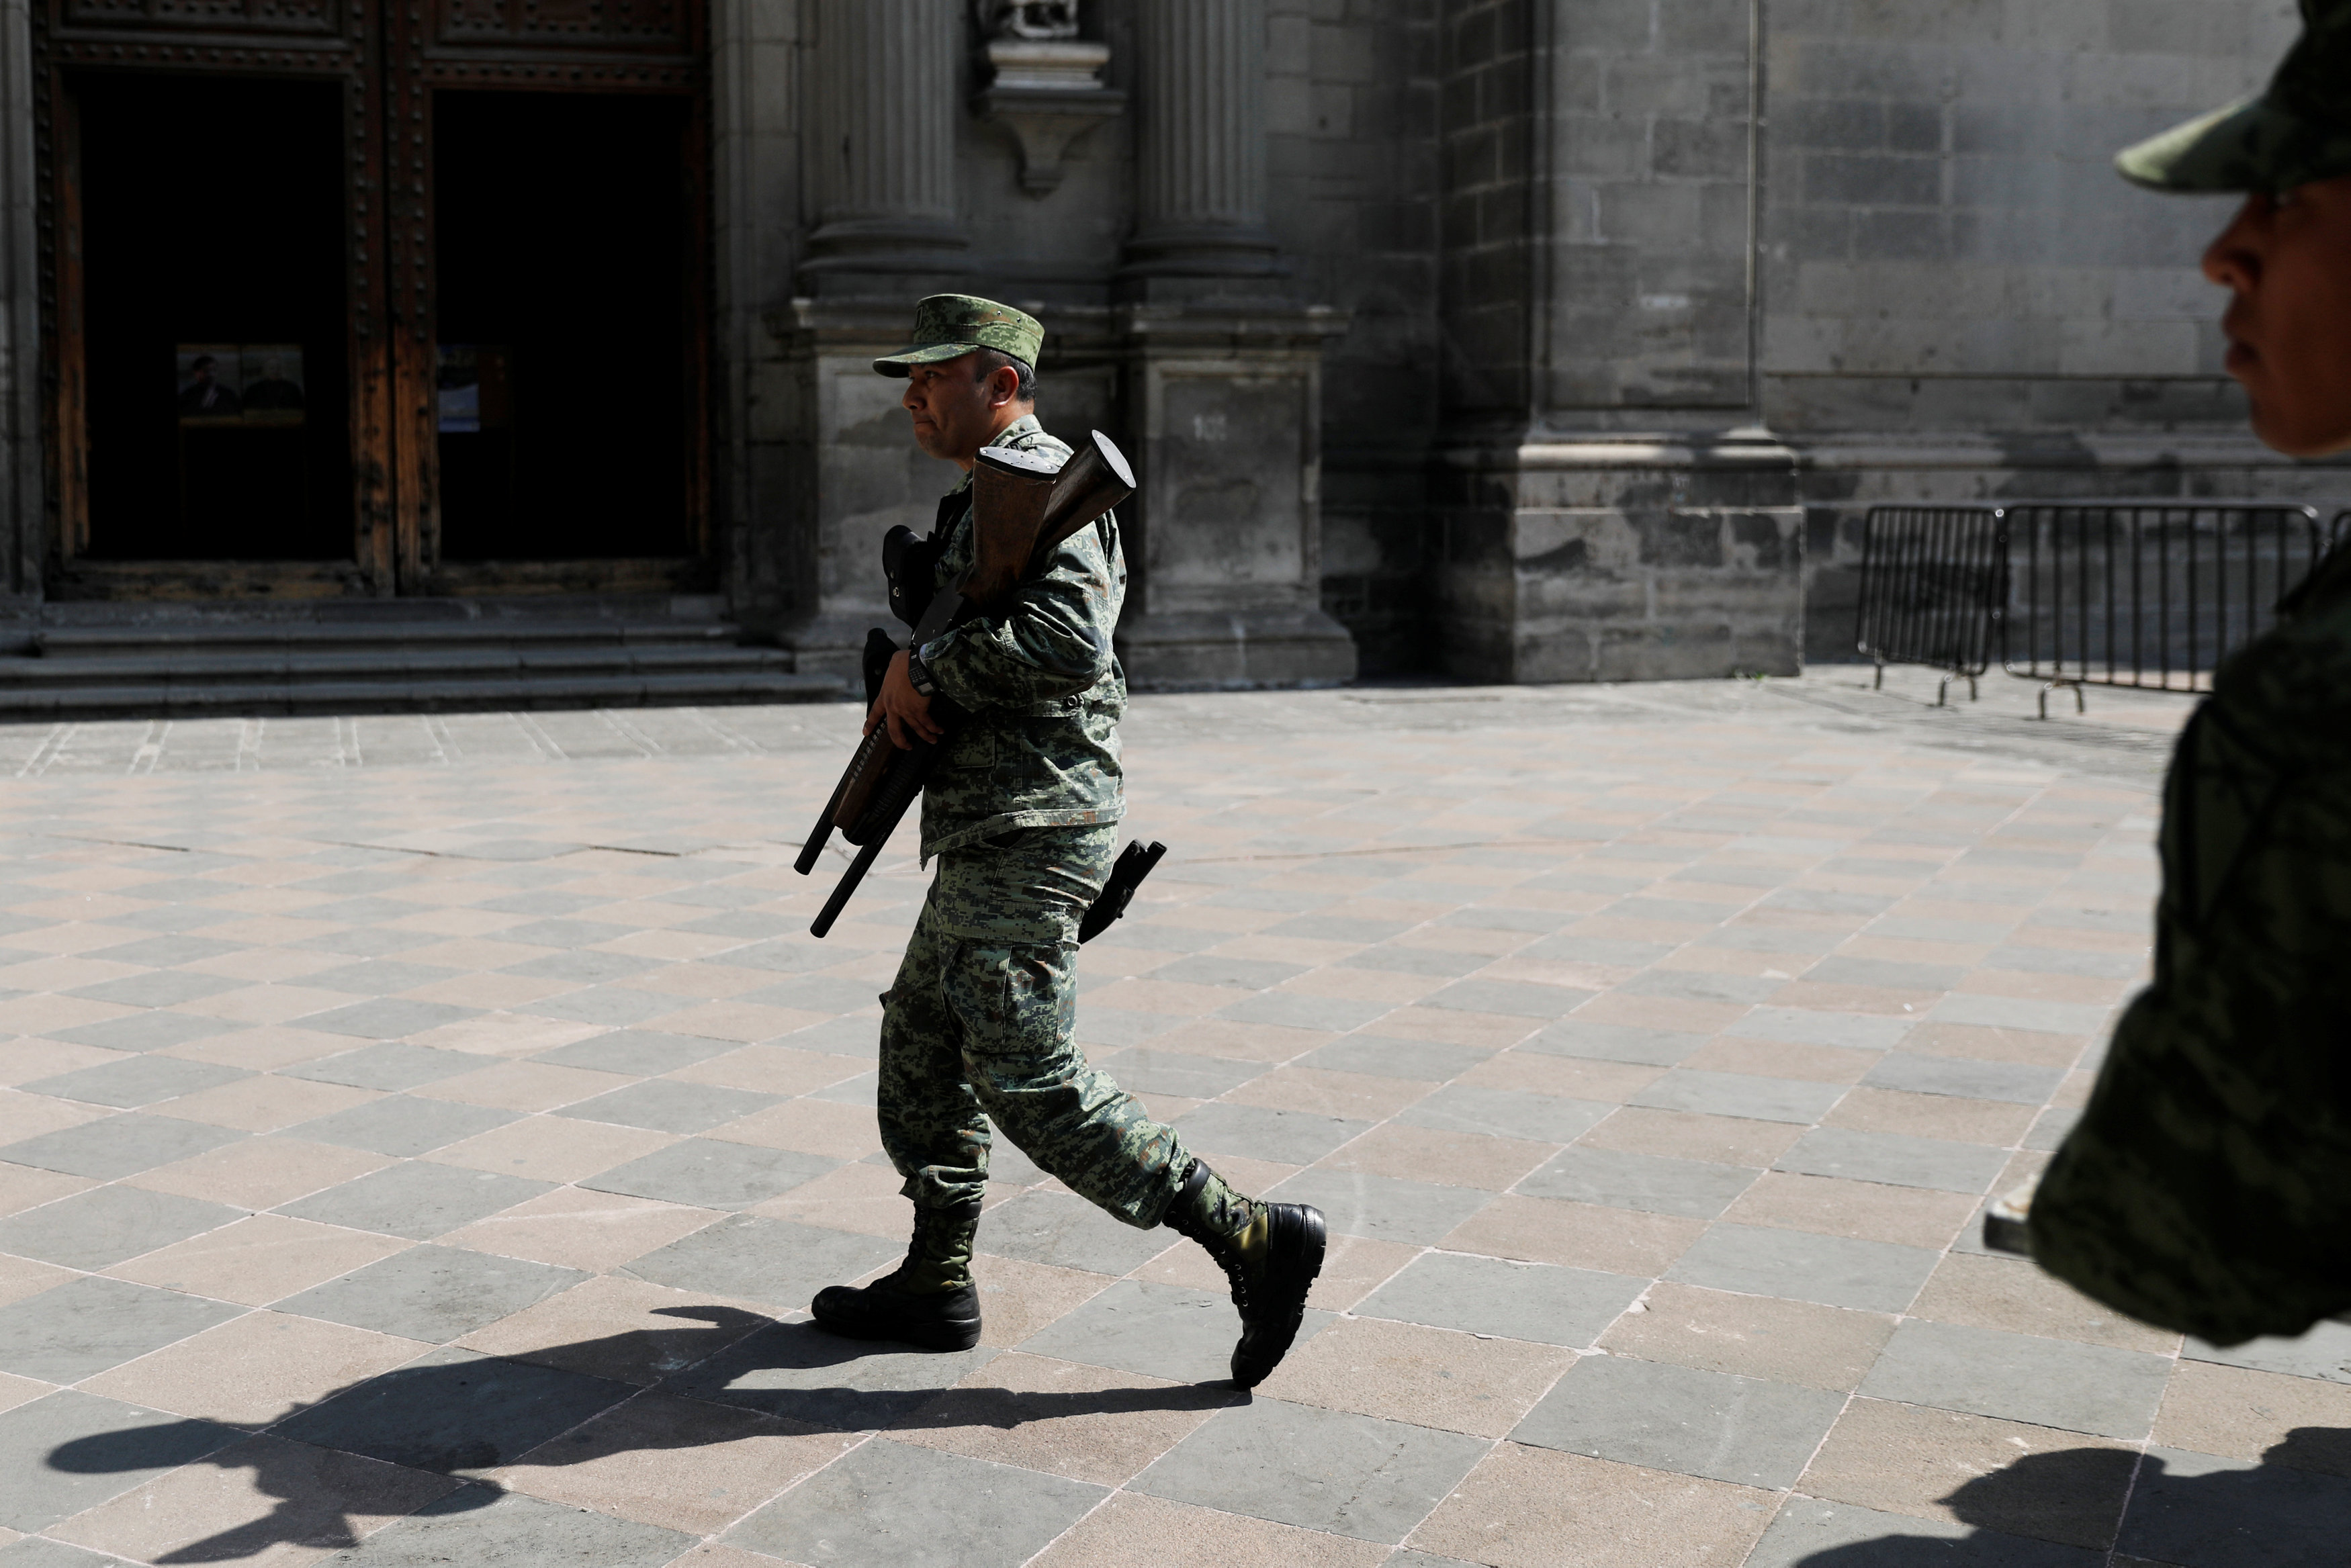 Los mexicano critican la Ley de Seguridad promulgada por el presidente Enrique Peña Nieto al considerarla una intervención militar en ámbitos civiles.